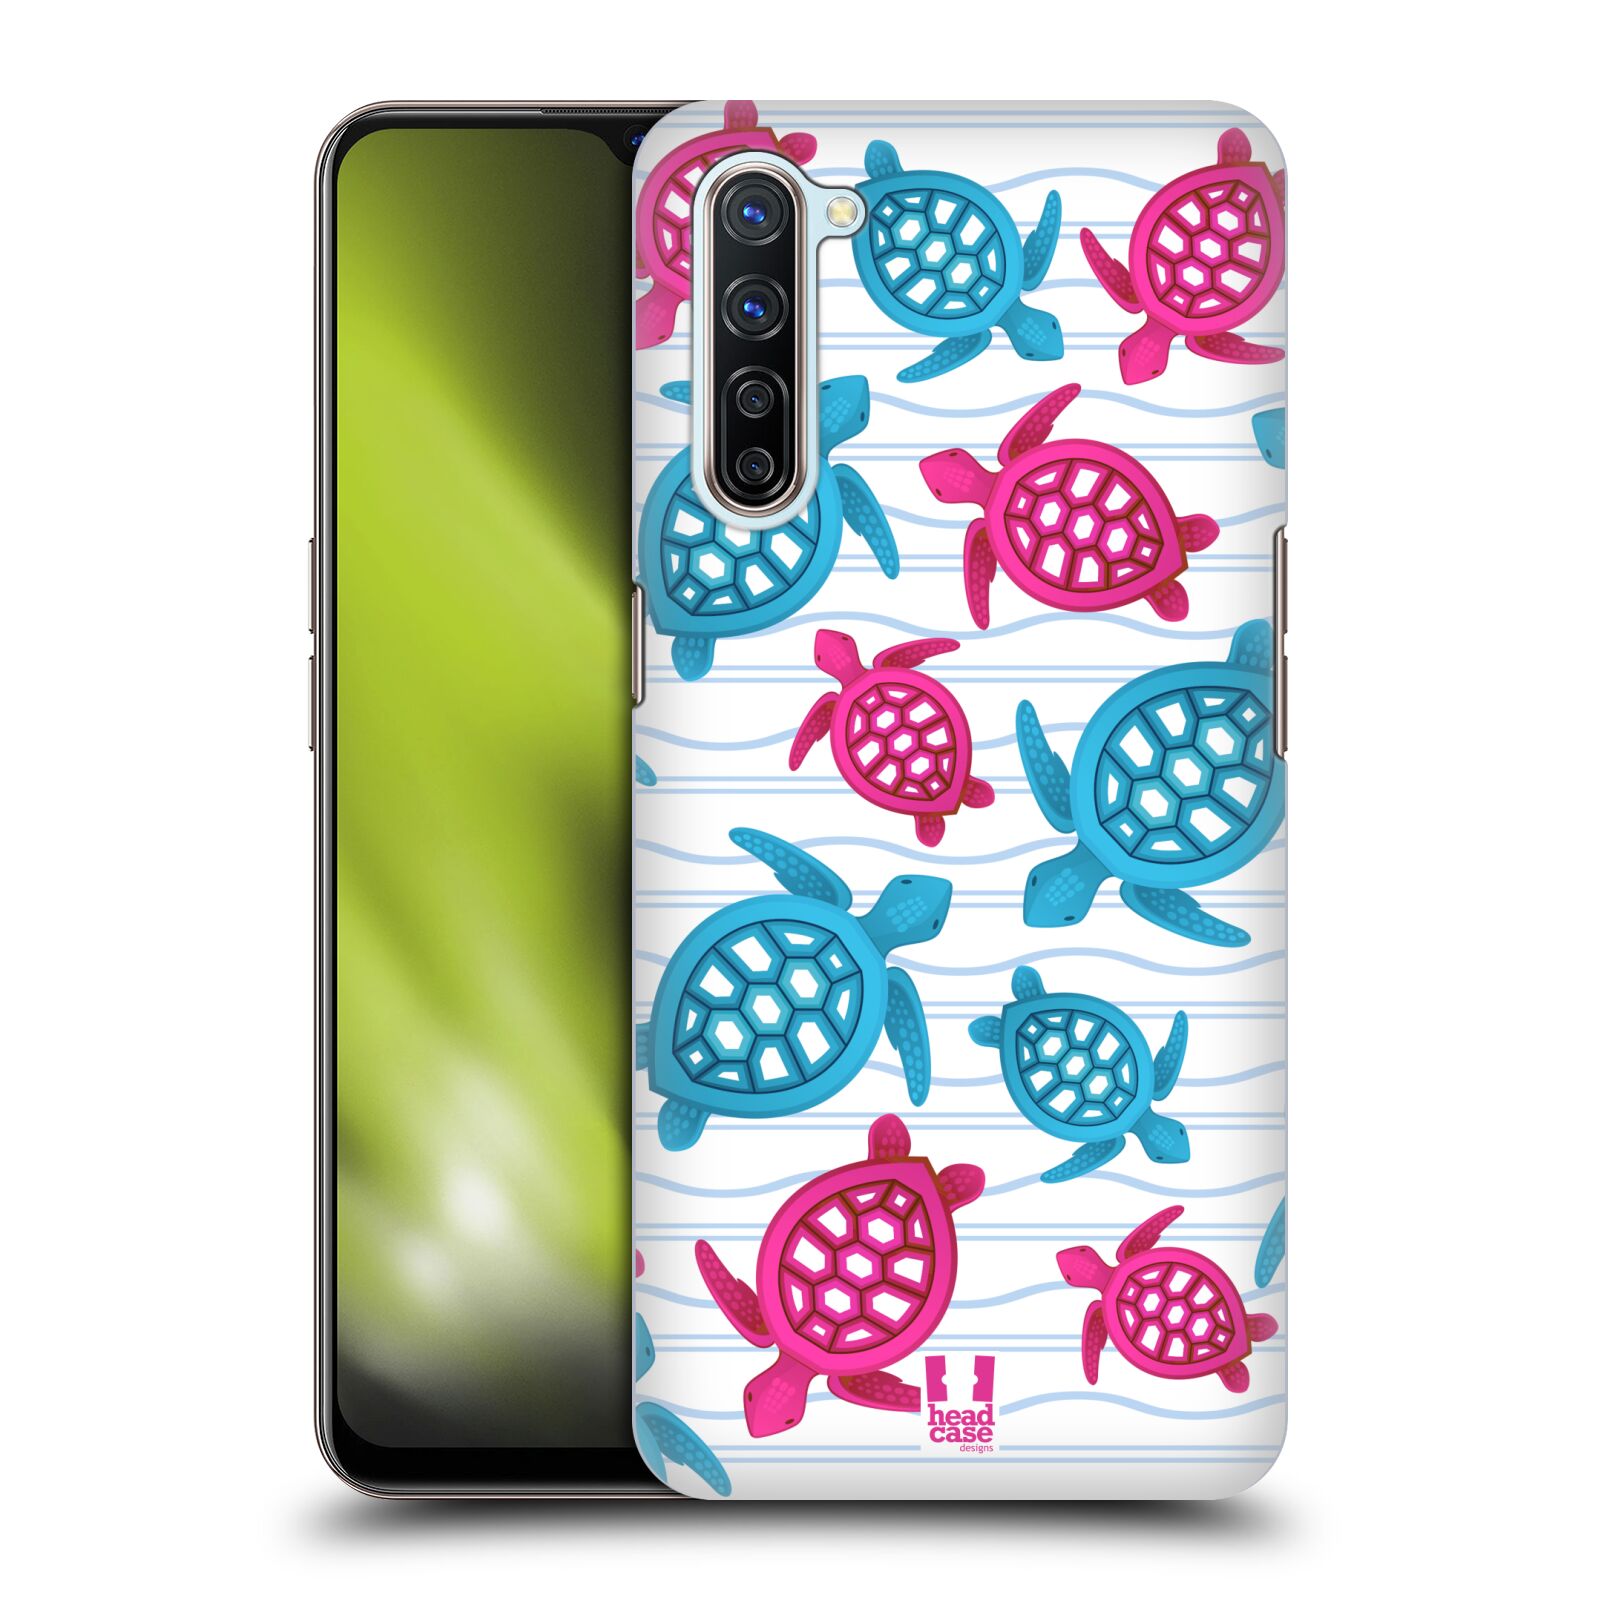 Zadní obal pro mobil Oppo Find X2 LITE - HEAD CASE - kreslený mořský vzor želvičky